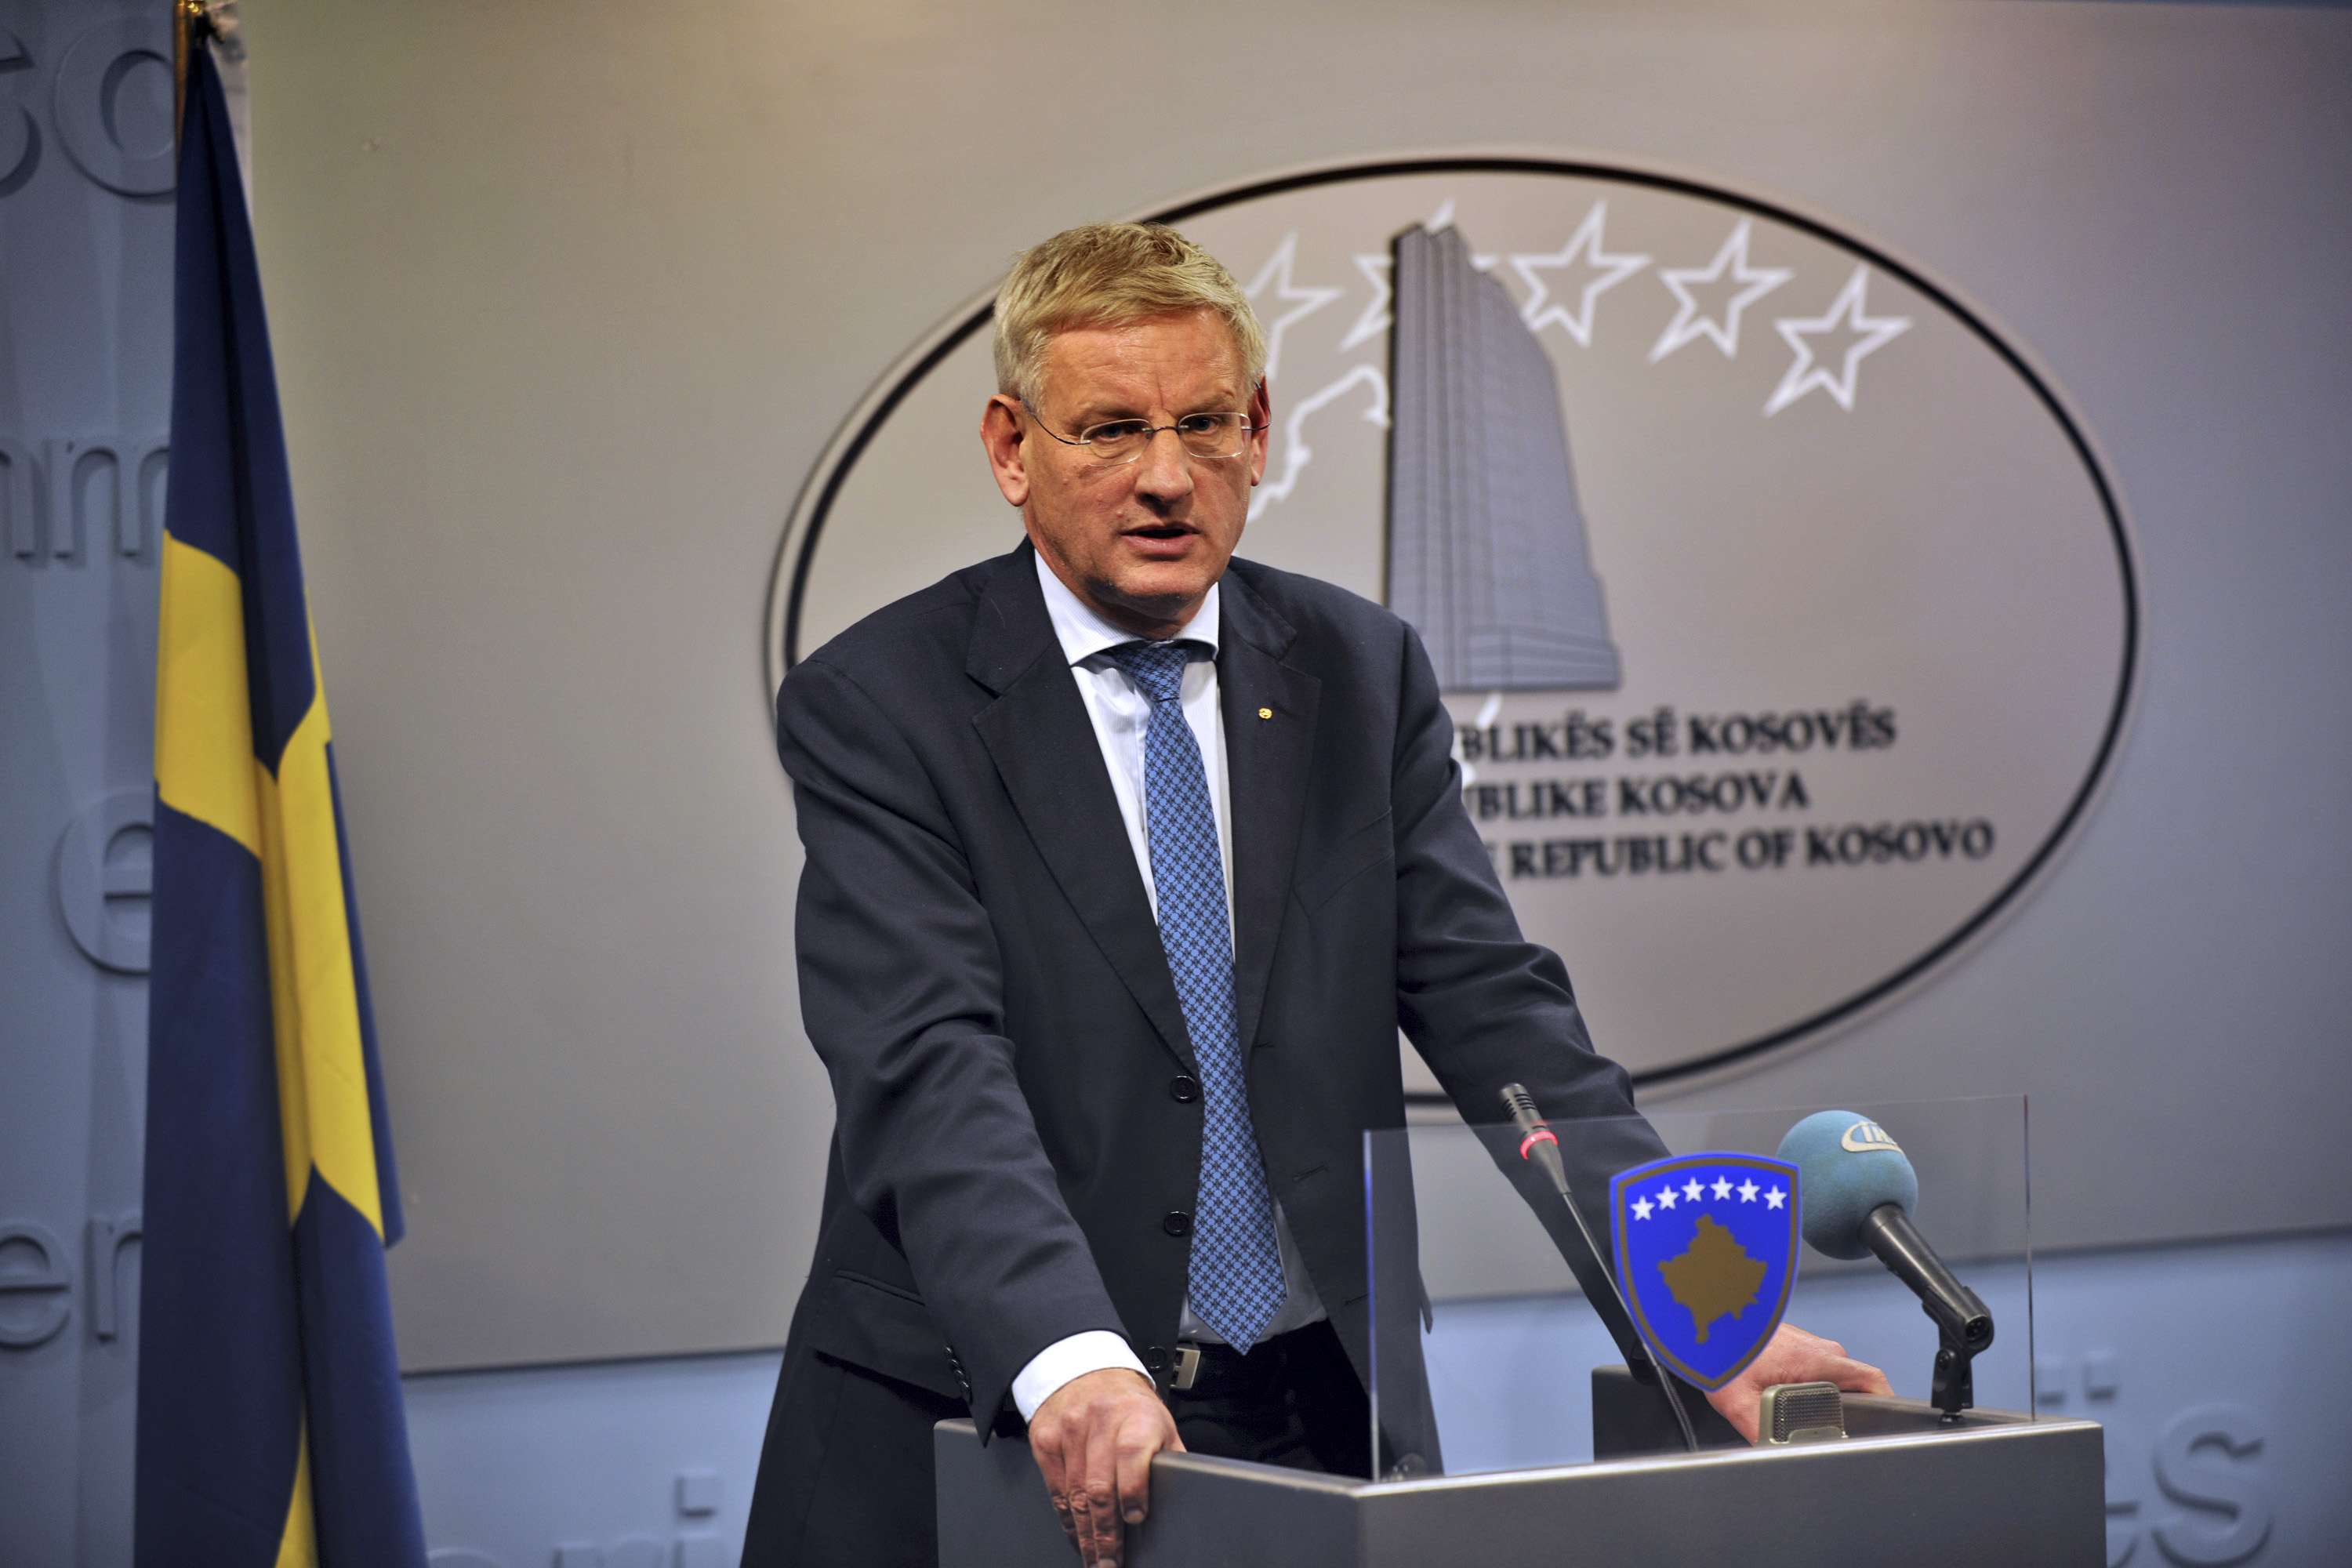 Utrikesminister Carl Bildt hävdade att "inte ett ord" i Nyheter24:s tidigare artikel var sant.